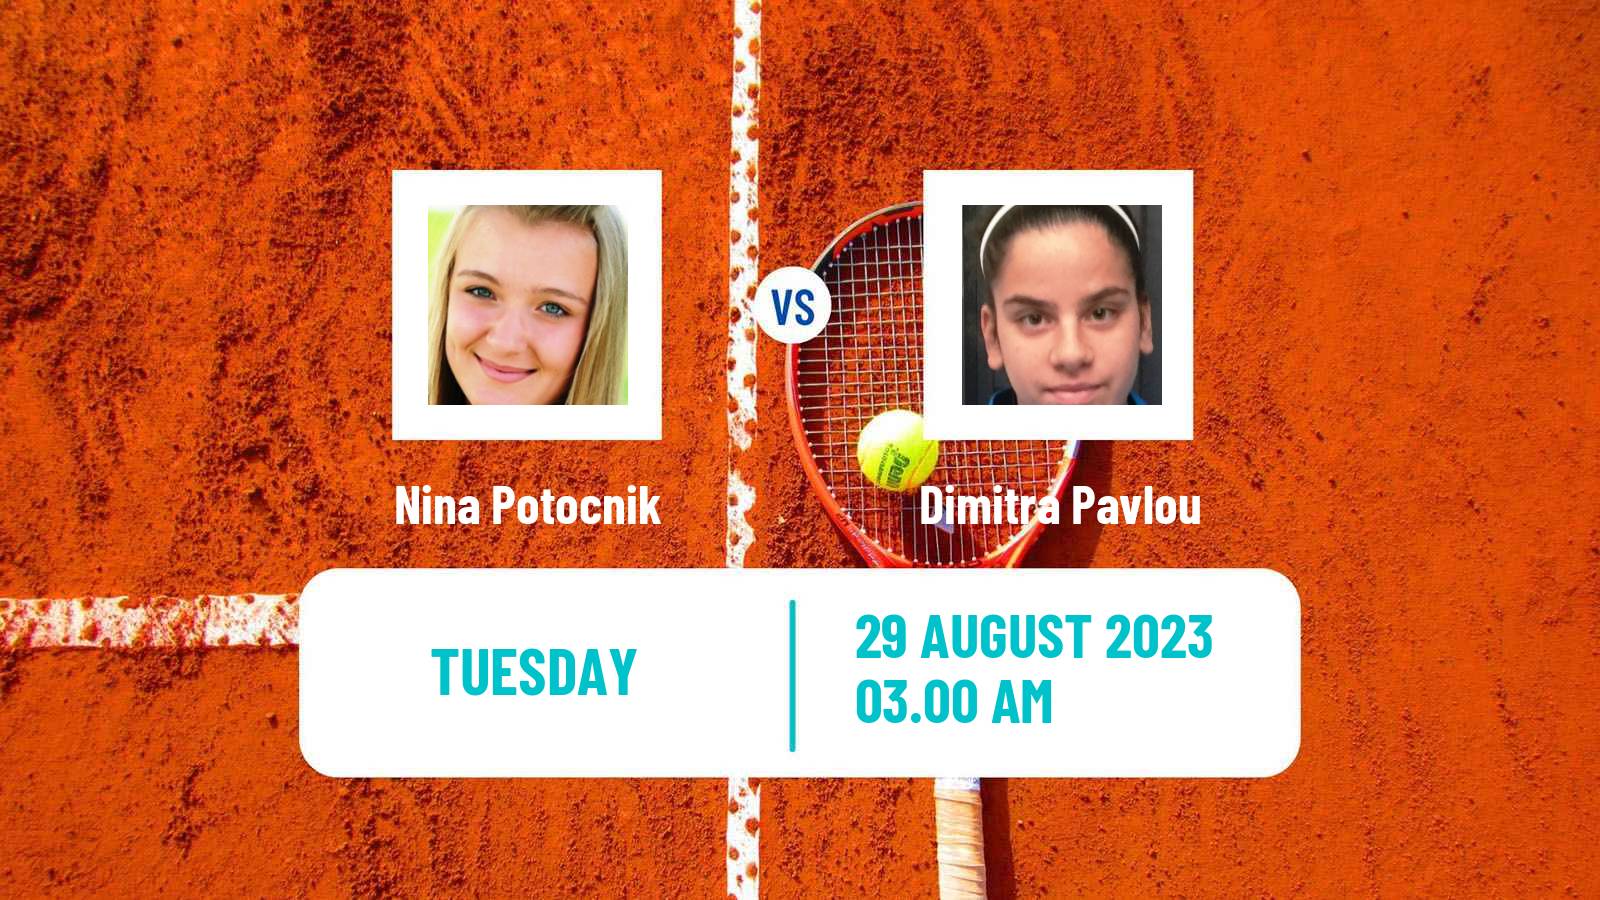 Tennis ITF W25 Trieste Women Nina Potocnik - Dimitra Pavlou